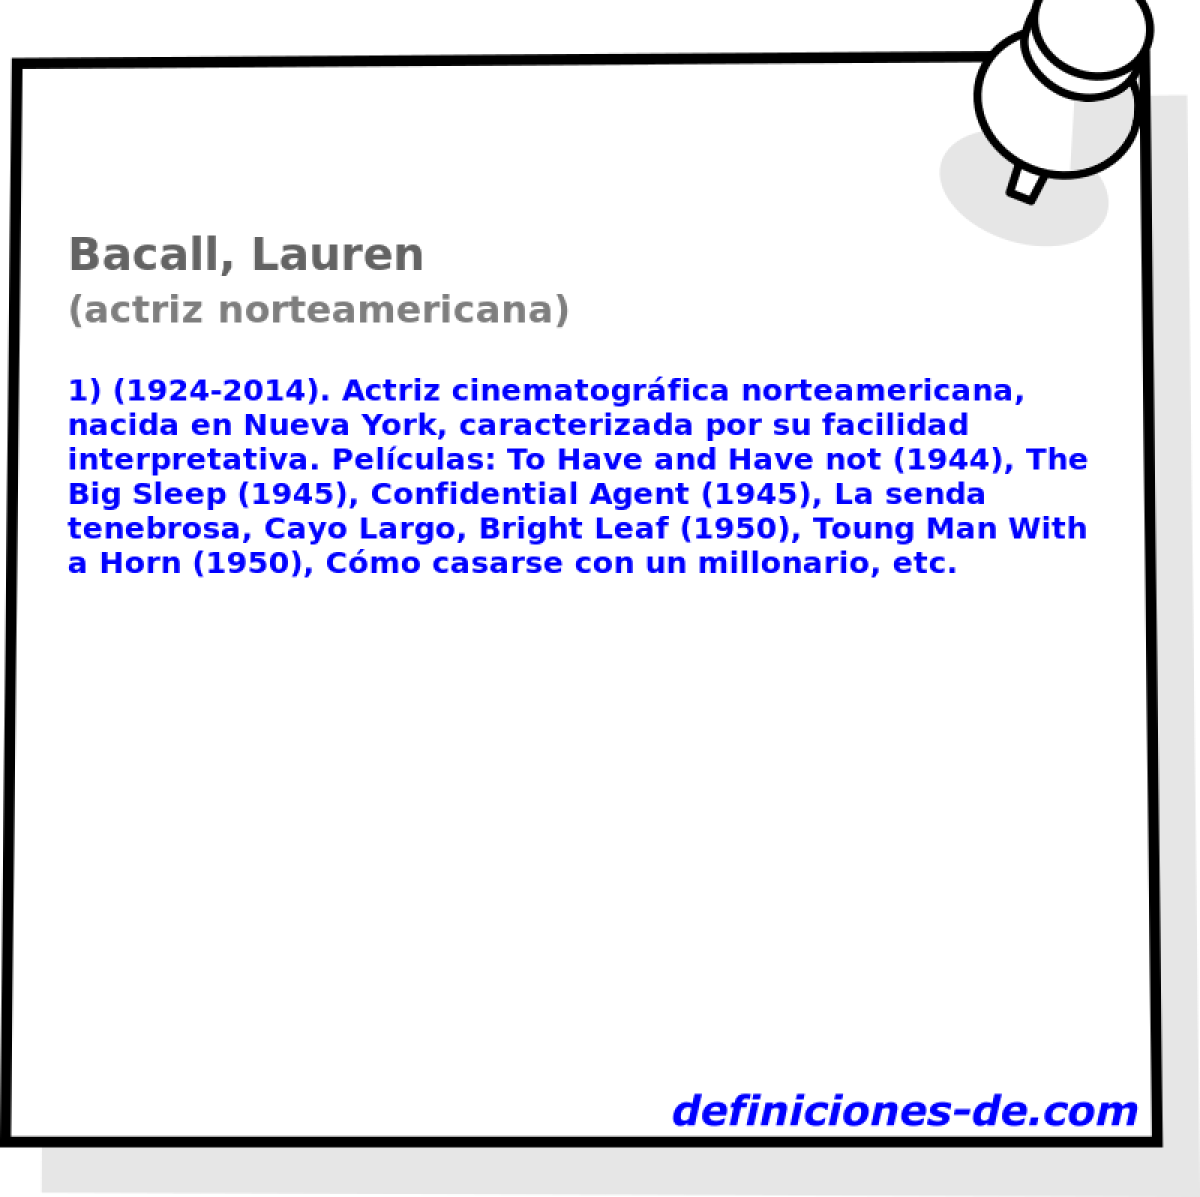 Bacall, Lauren (actriz norteamericana)